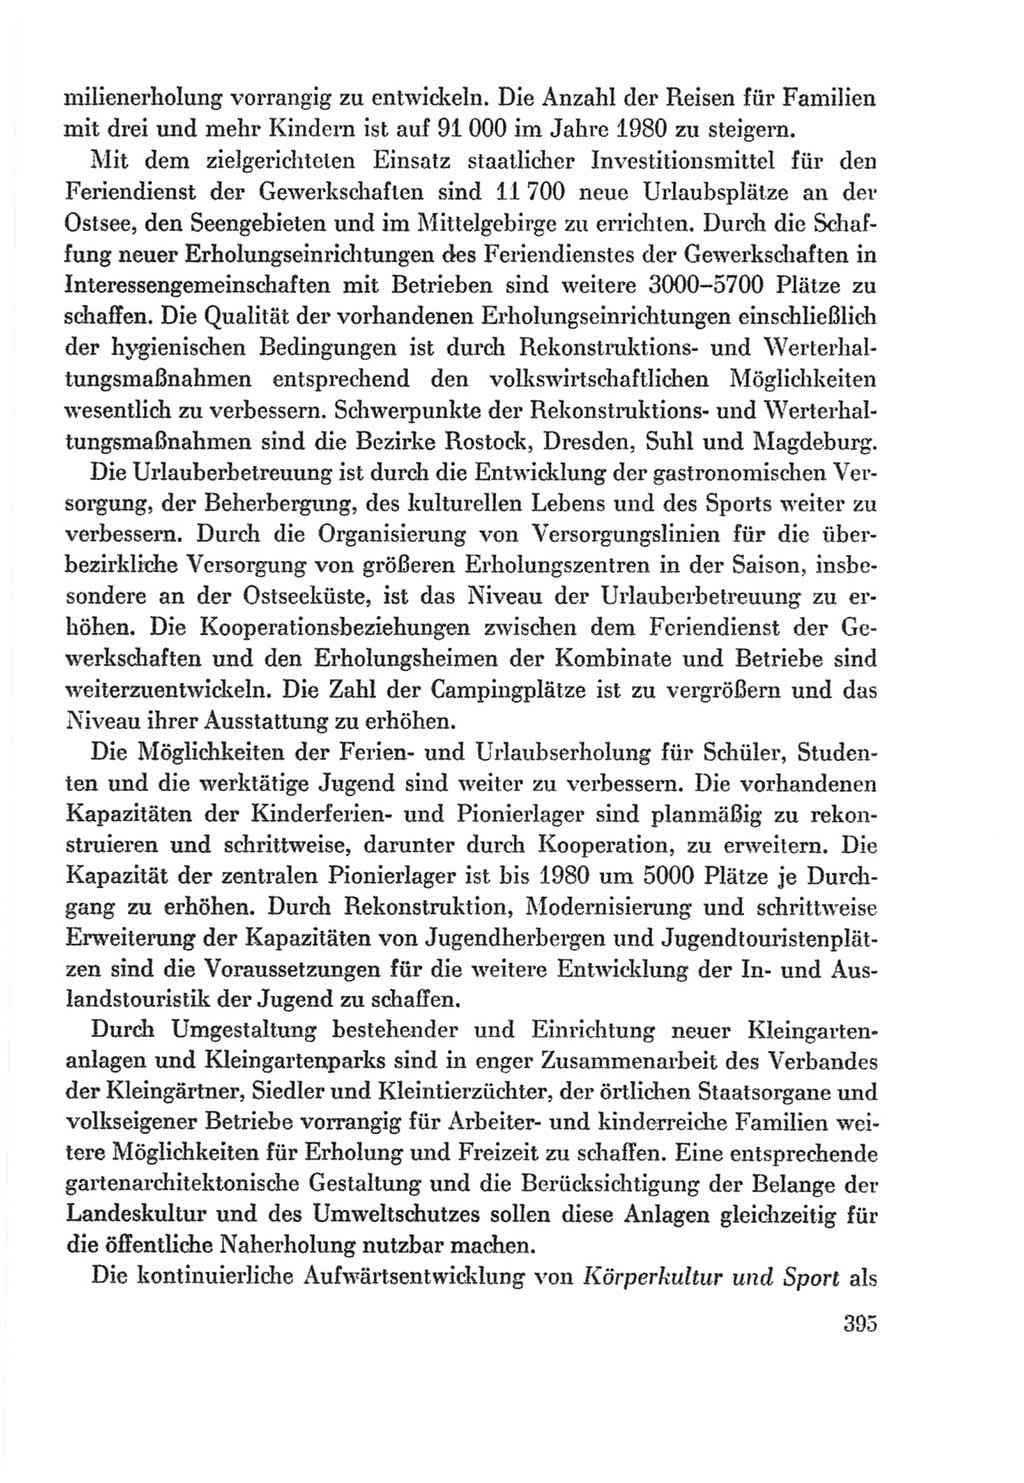 Protokoll der Verhandlungen des Ⅸ. Parteitages der Sozialistischen Einheitspartei Deutschlands (SED) [Deutsche Demokratische Republik (DDR)] 1976, Band 2, Seite 395 (Prot. Verh. Ⅸ. PT SED DDR 1976, Bd. 2, S. 395)